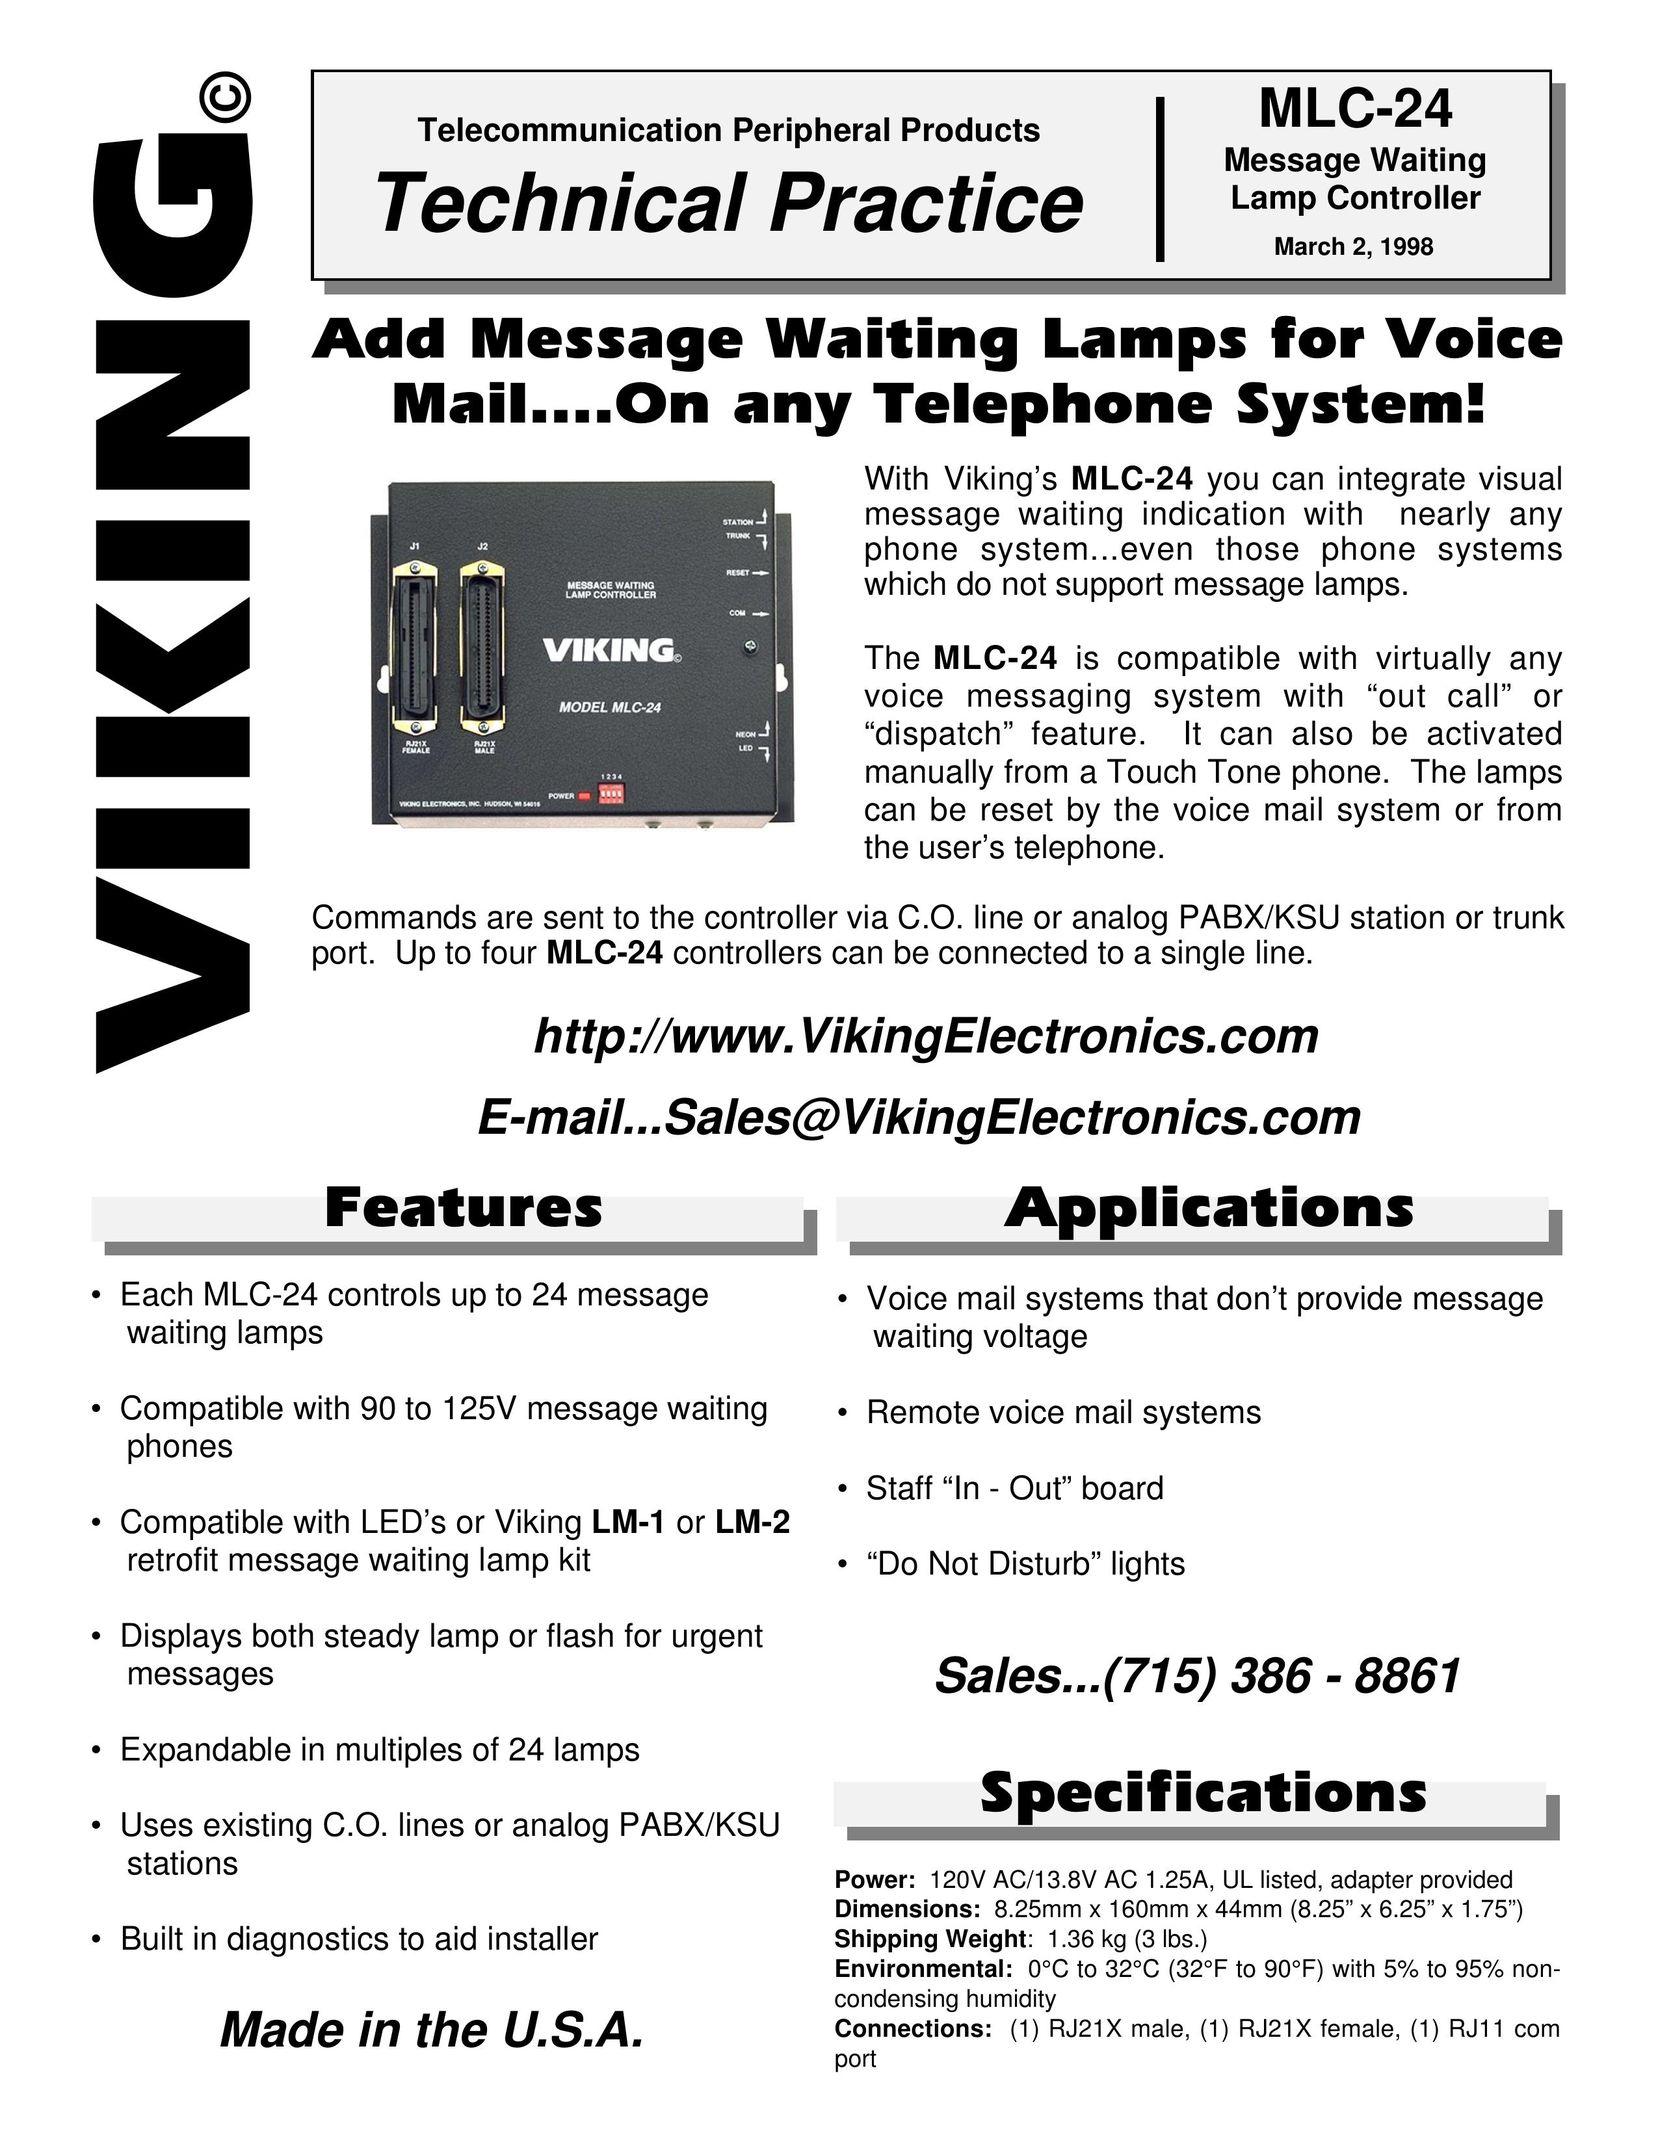 Viking Electronics MLC-24 Answering Machine User Manual (Page 1)